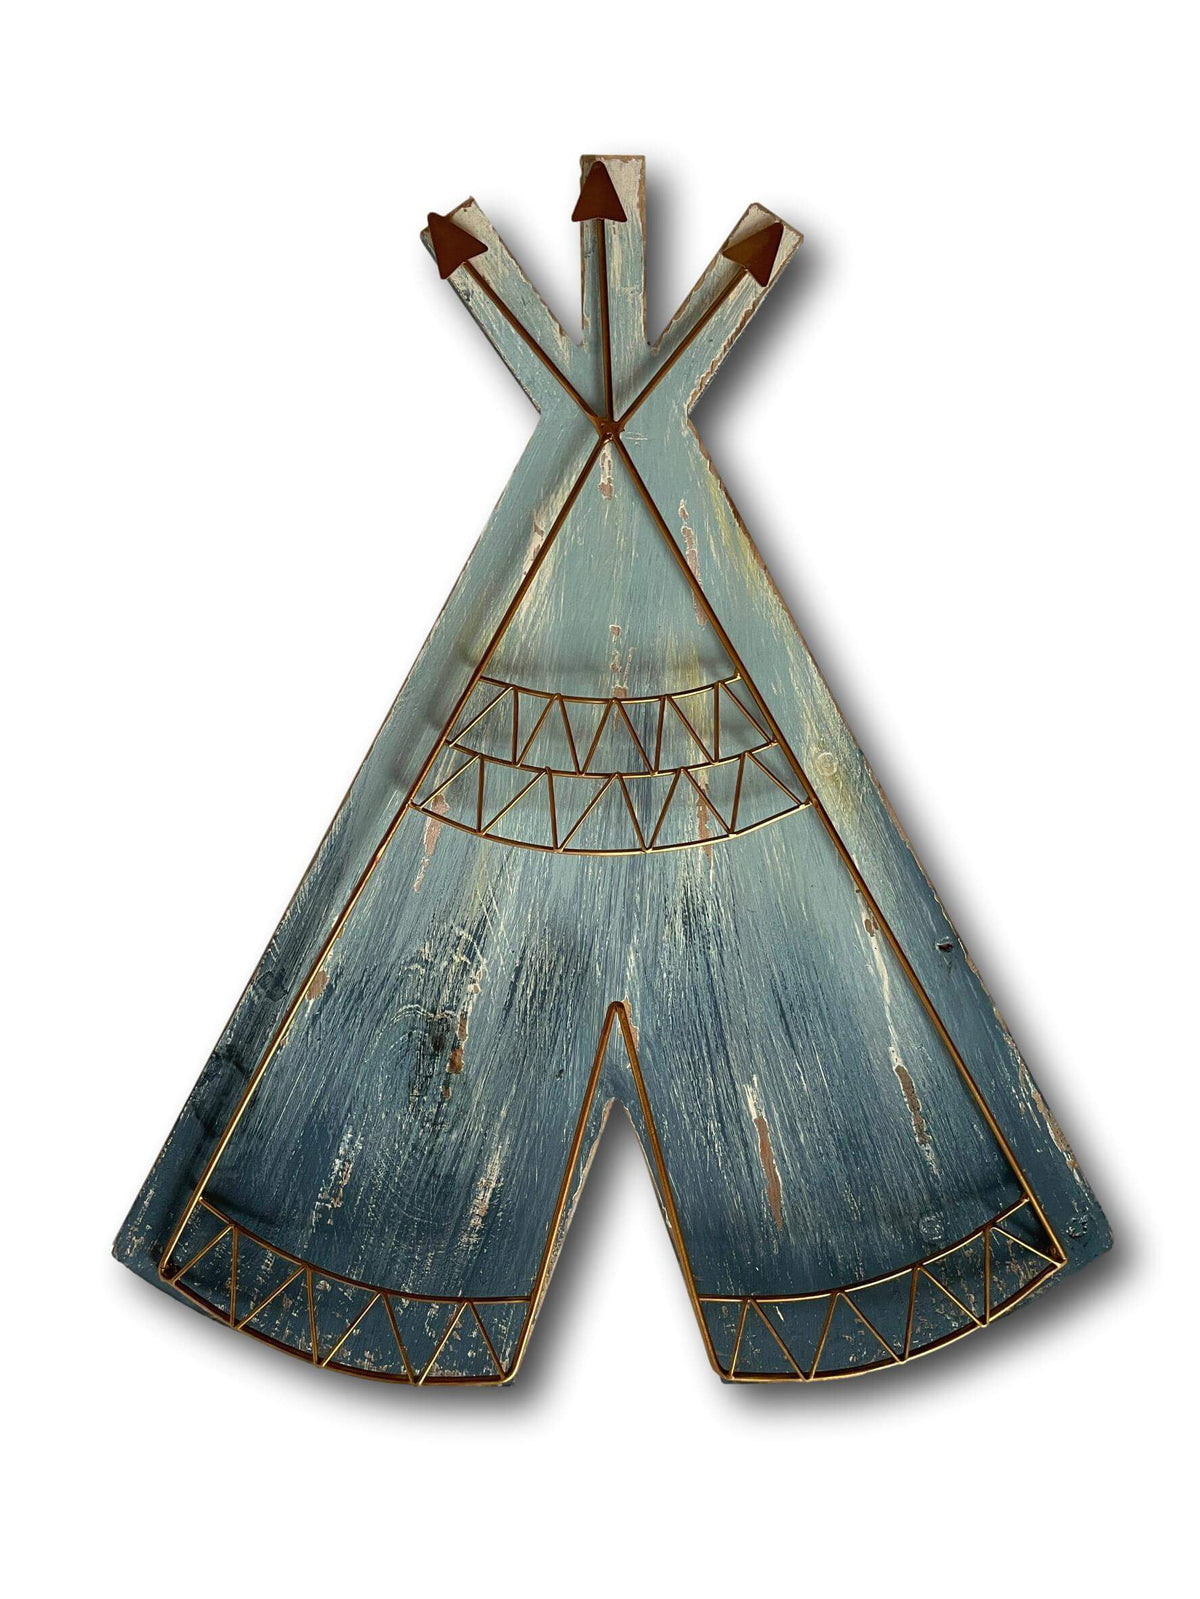 Unique Wooden Tepee Wall Art - Handmade Native American Style BOHO Art